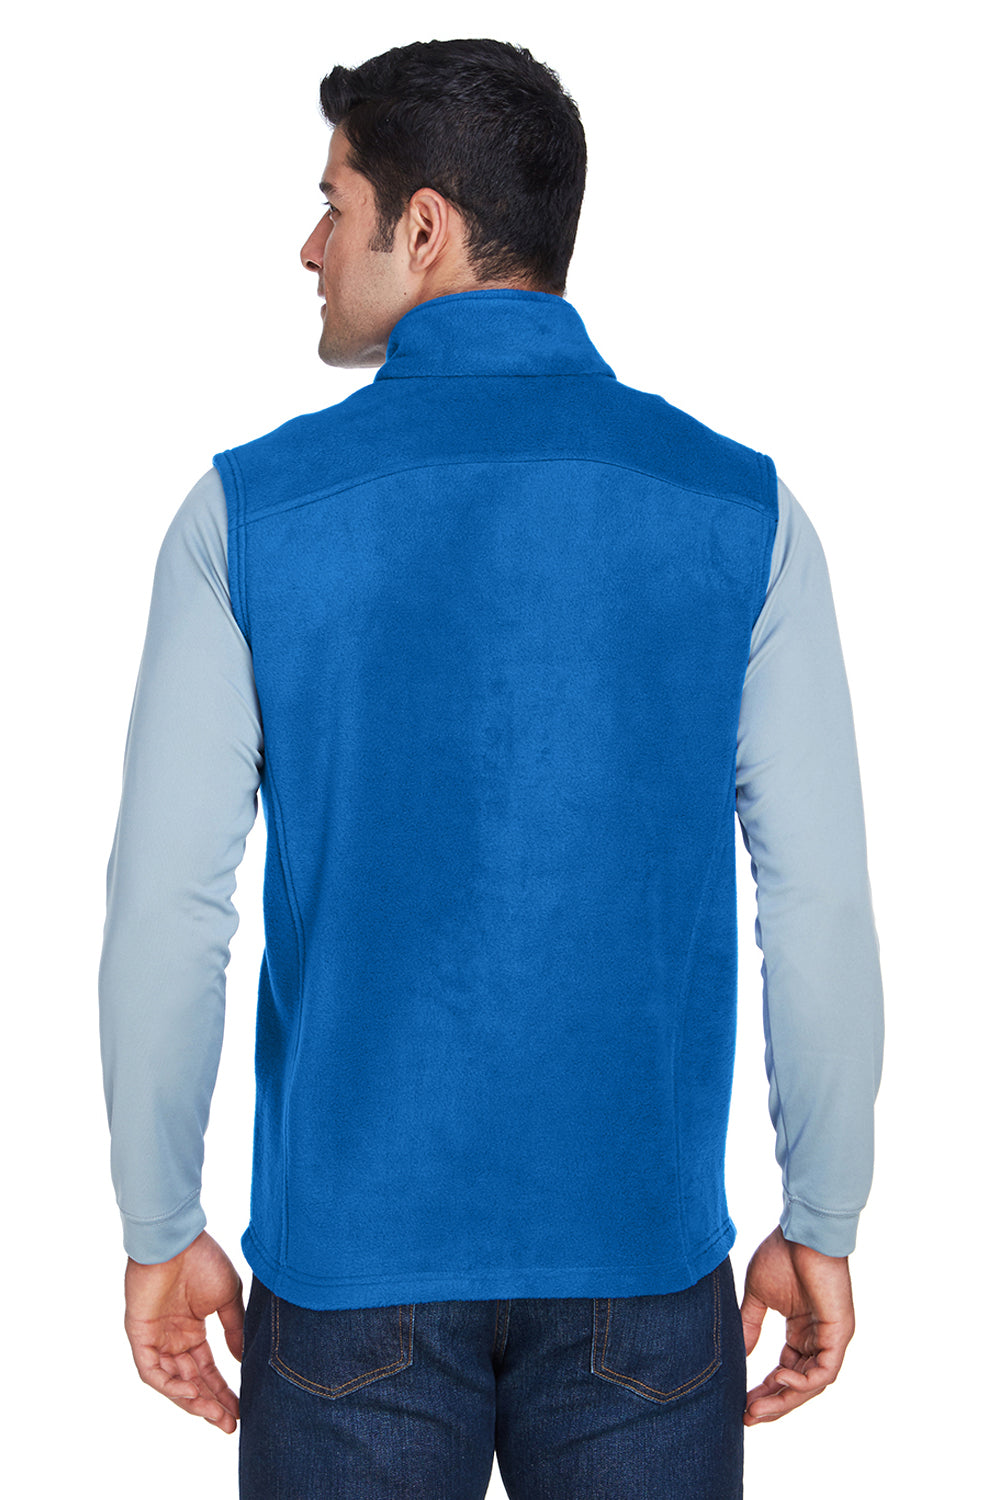 Core 365 88191 Mens Journey Full Zip Fleece Vest Royal Blue Back